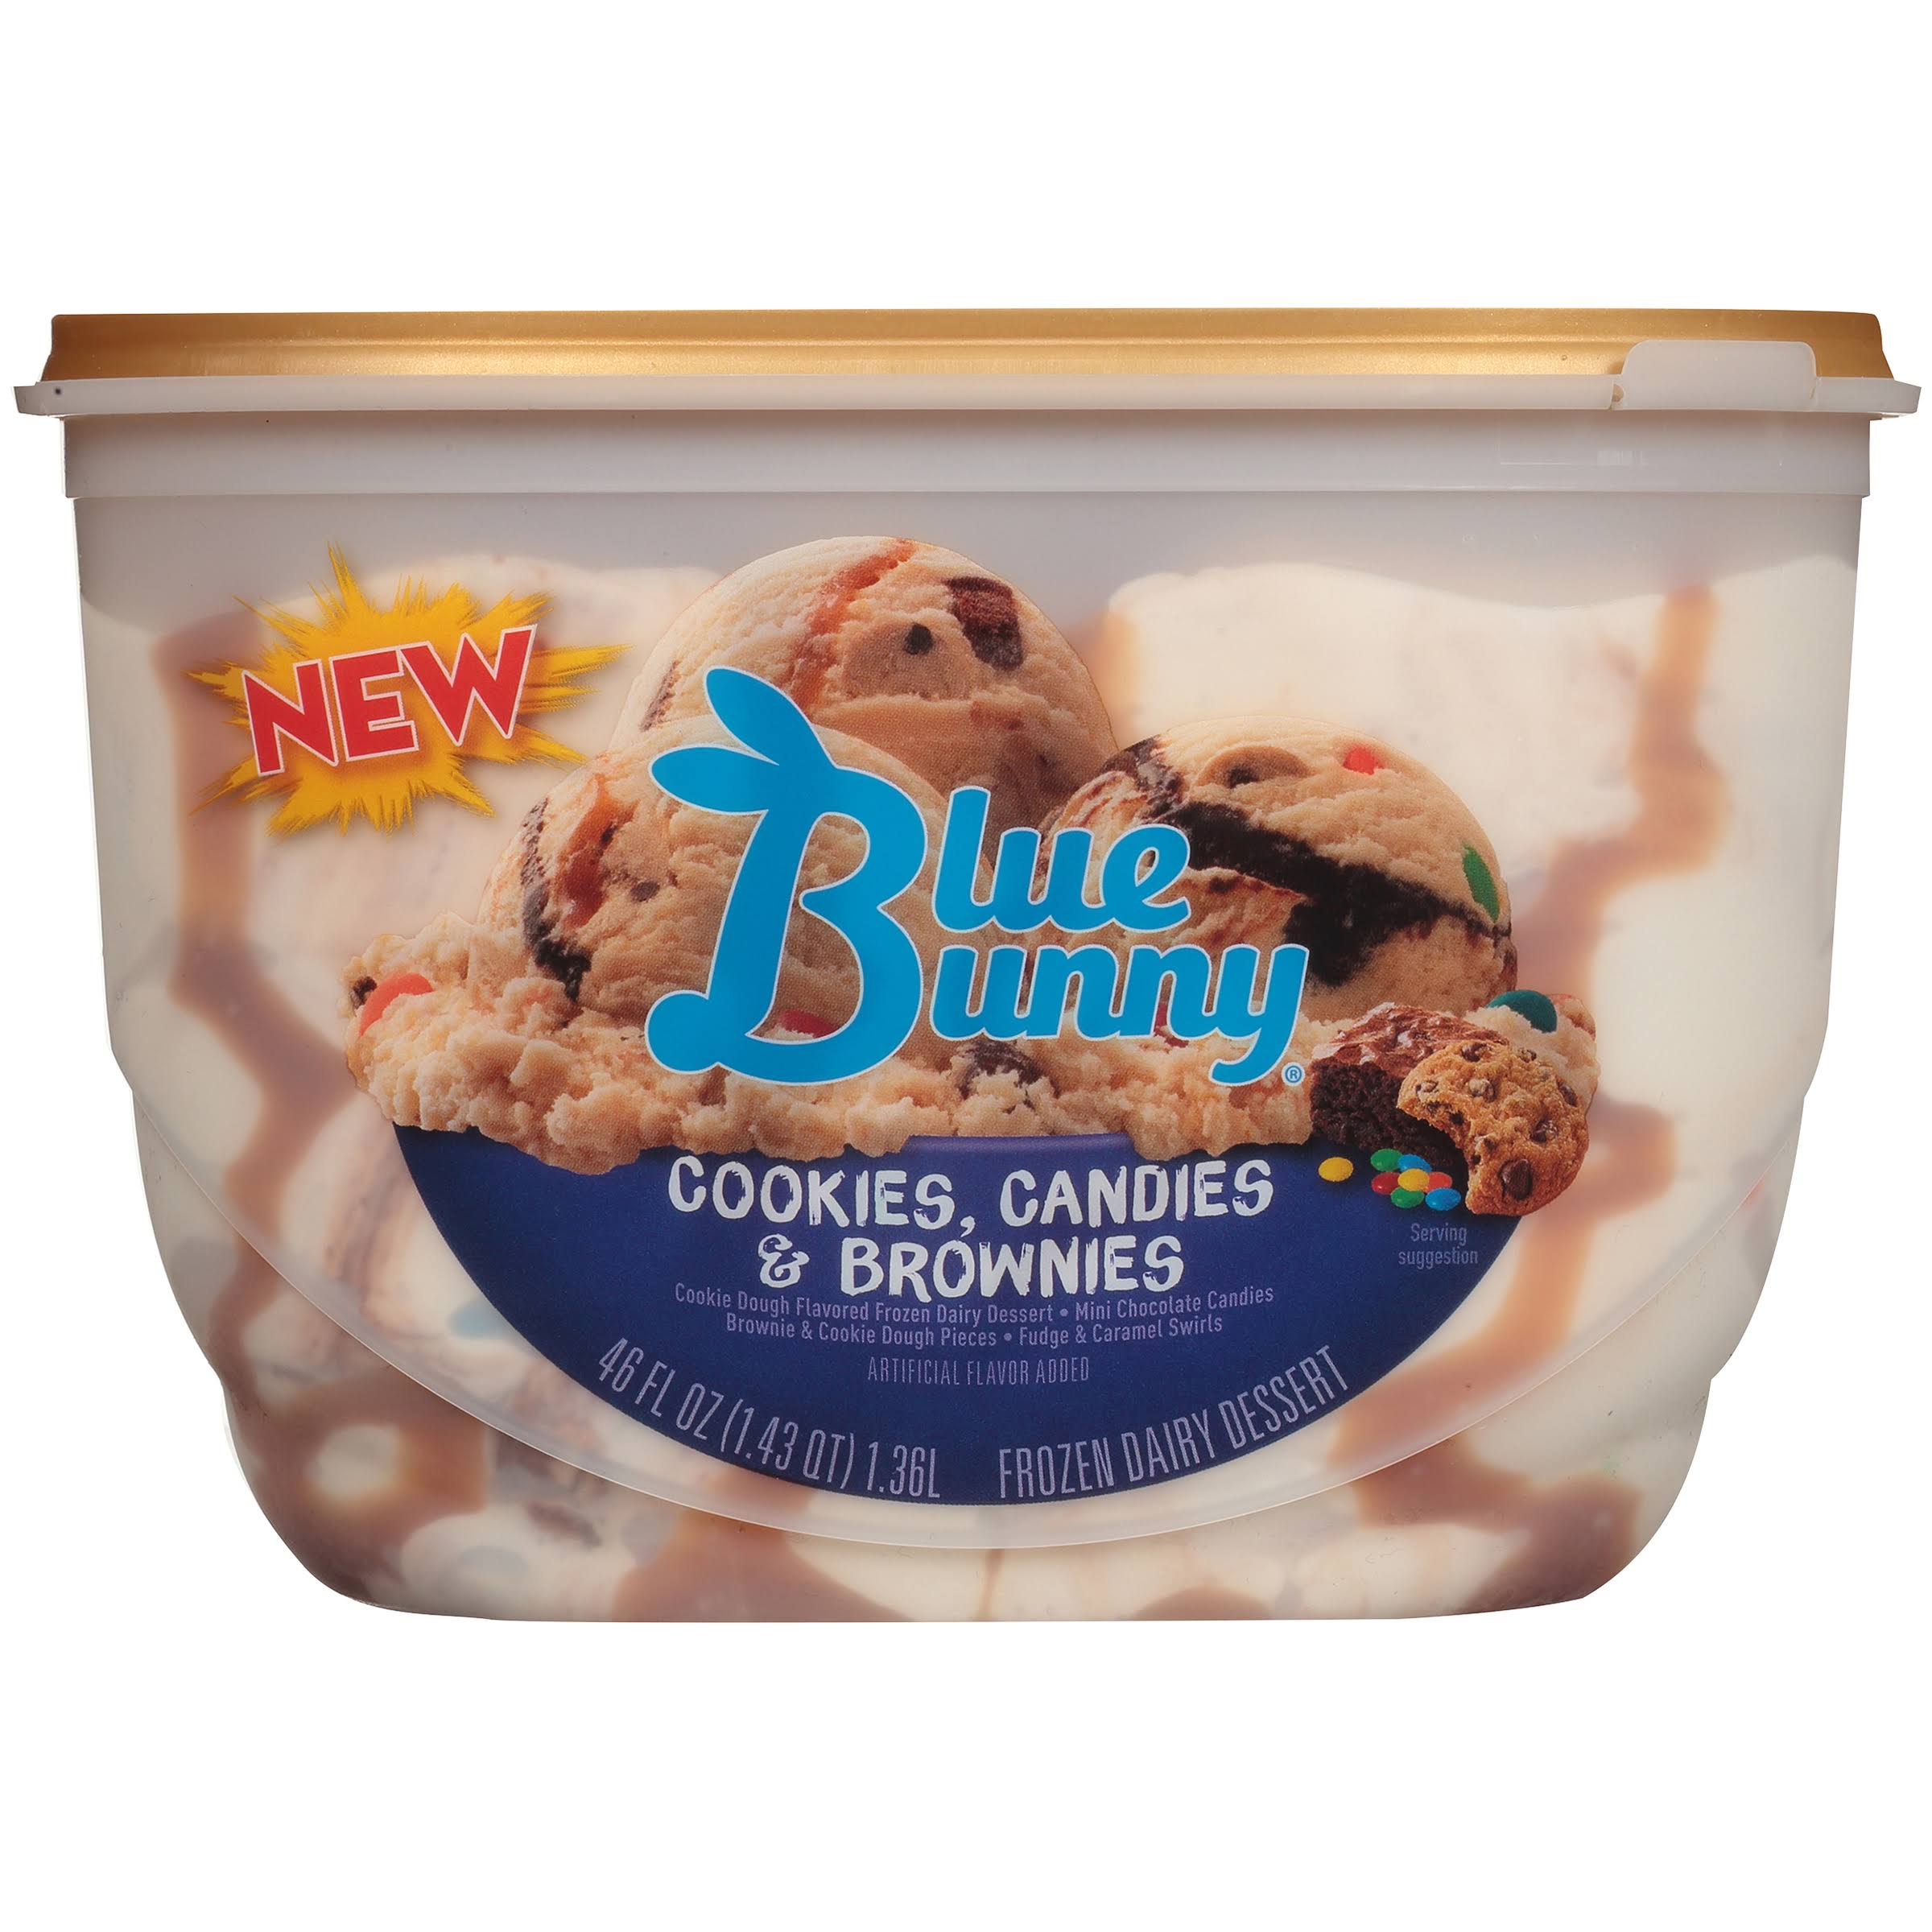 Blue Bunnies Ice Cream, Cookies, Candies & Brownies - 46 fl oz